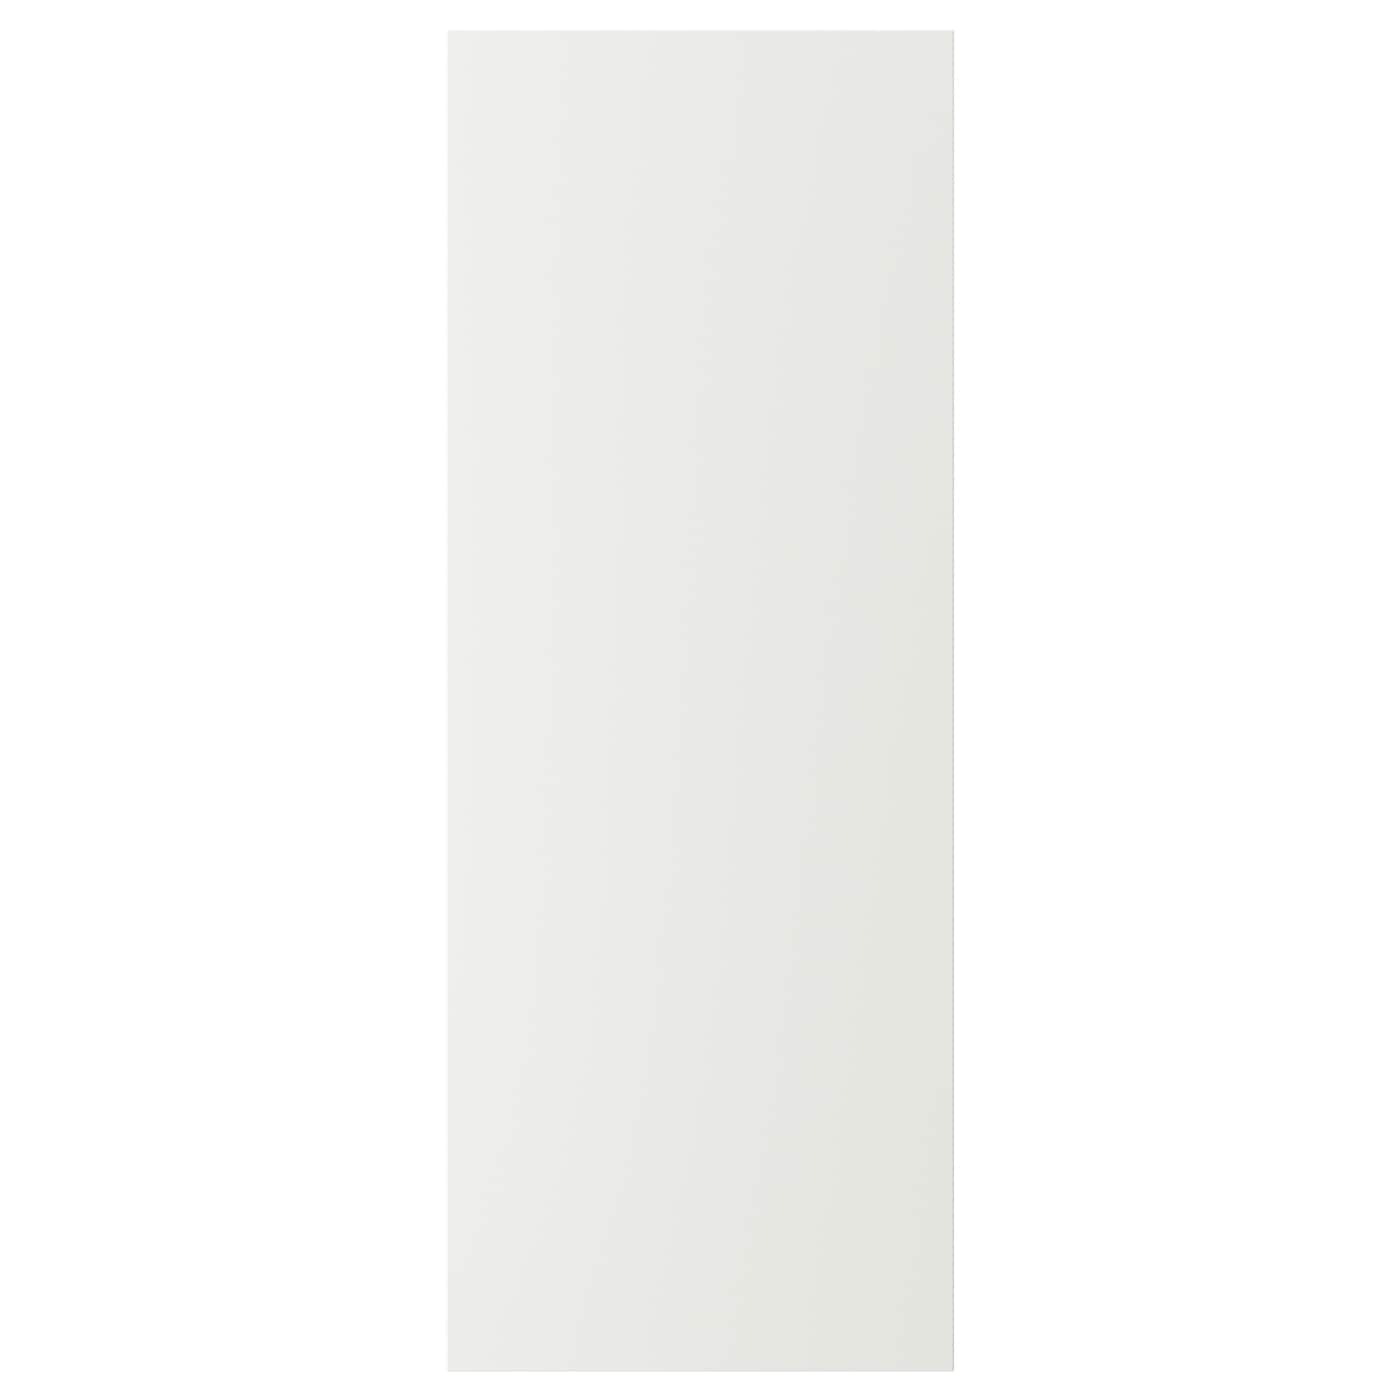 Накладная панель - IKEA STENSUND, 103х39 см, белый, СТЕНСУНД ИКЕА